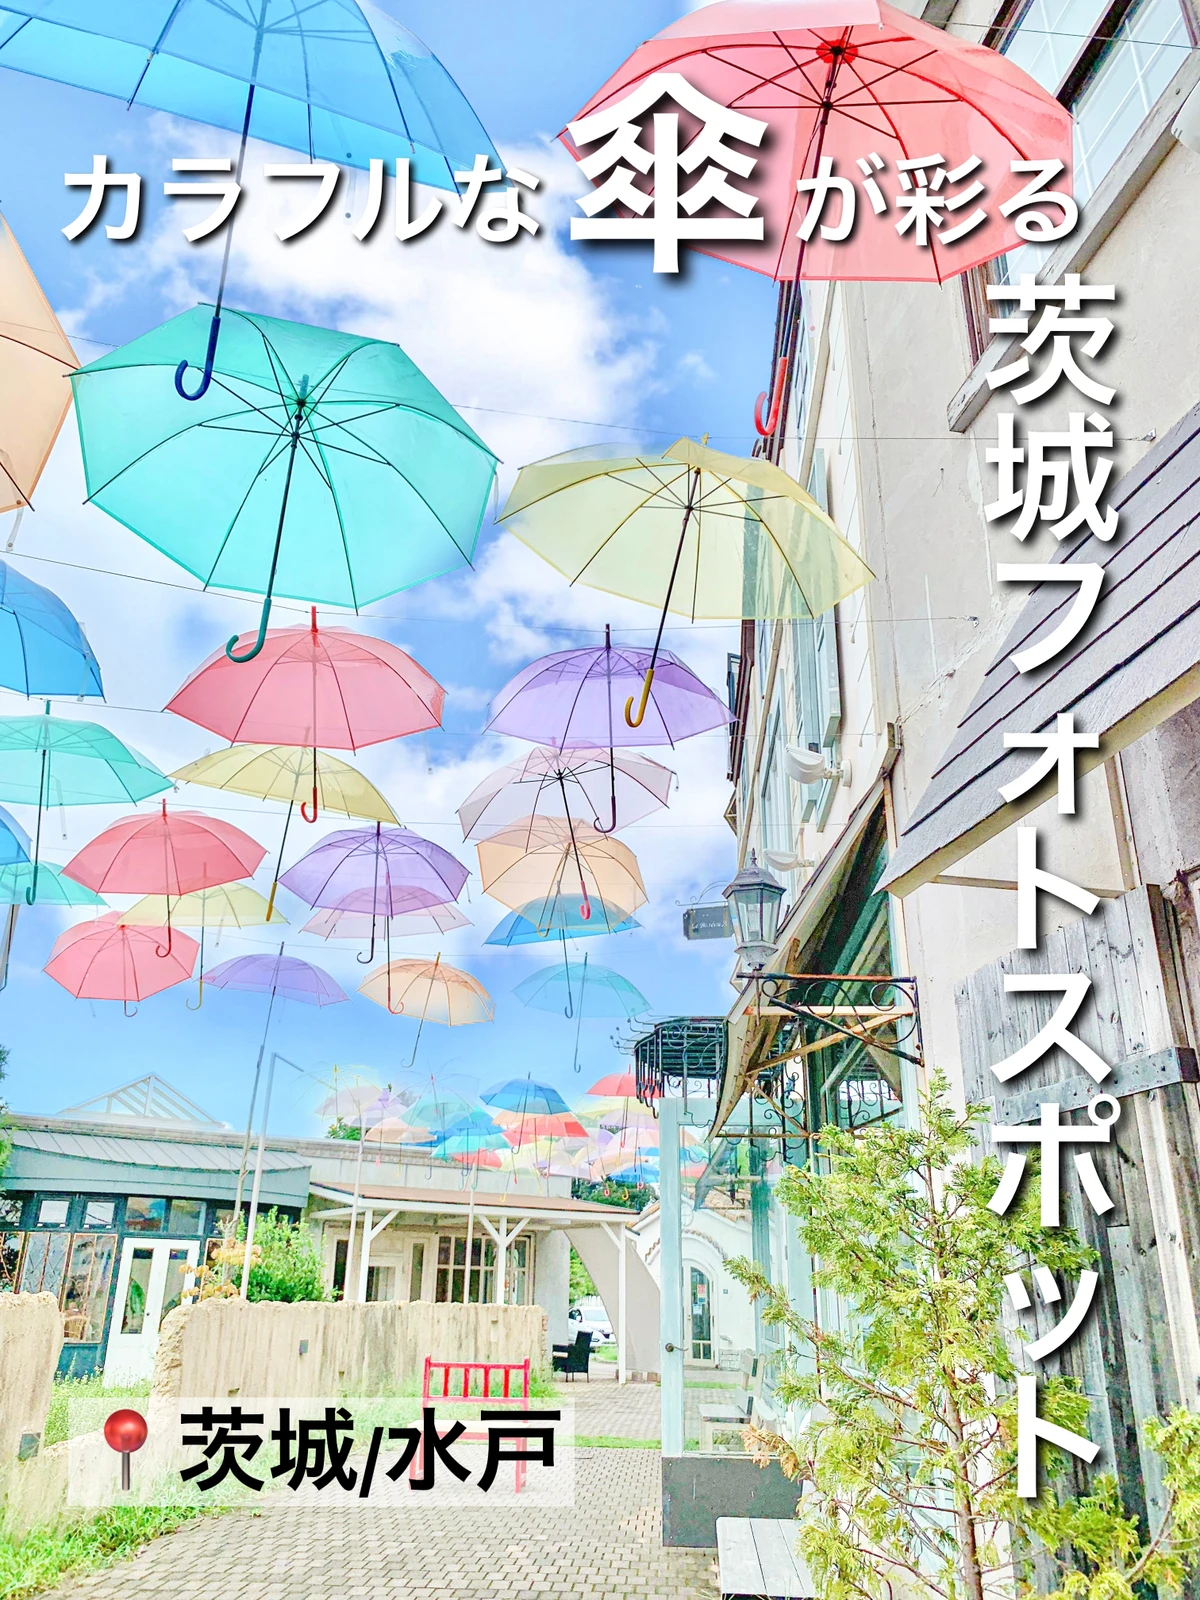 【 茨城/水戸 】カラフルな傘が彩る/茨城フォトスポットの画像 (1枚目)